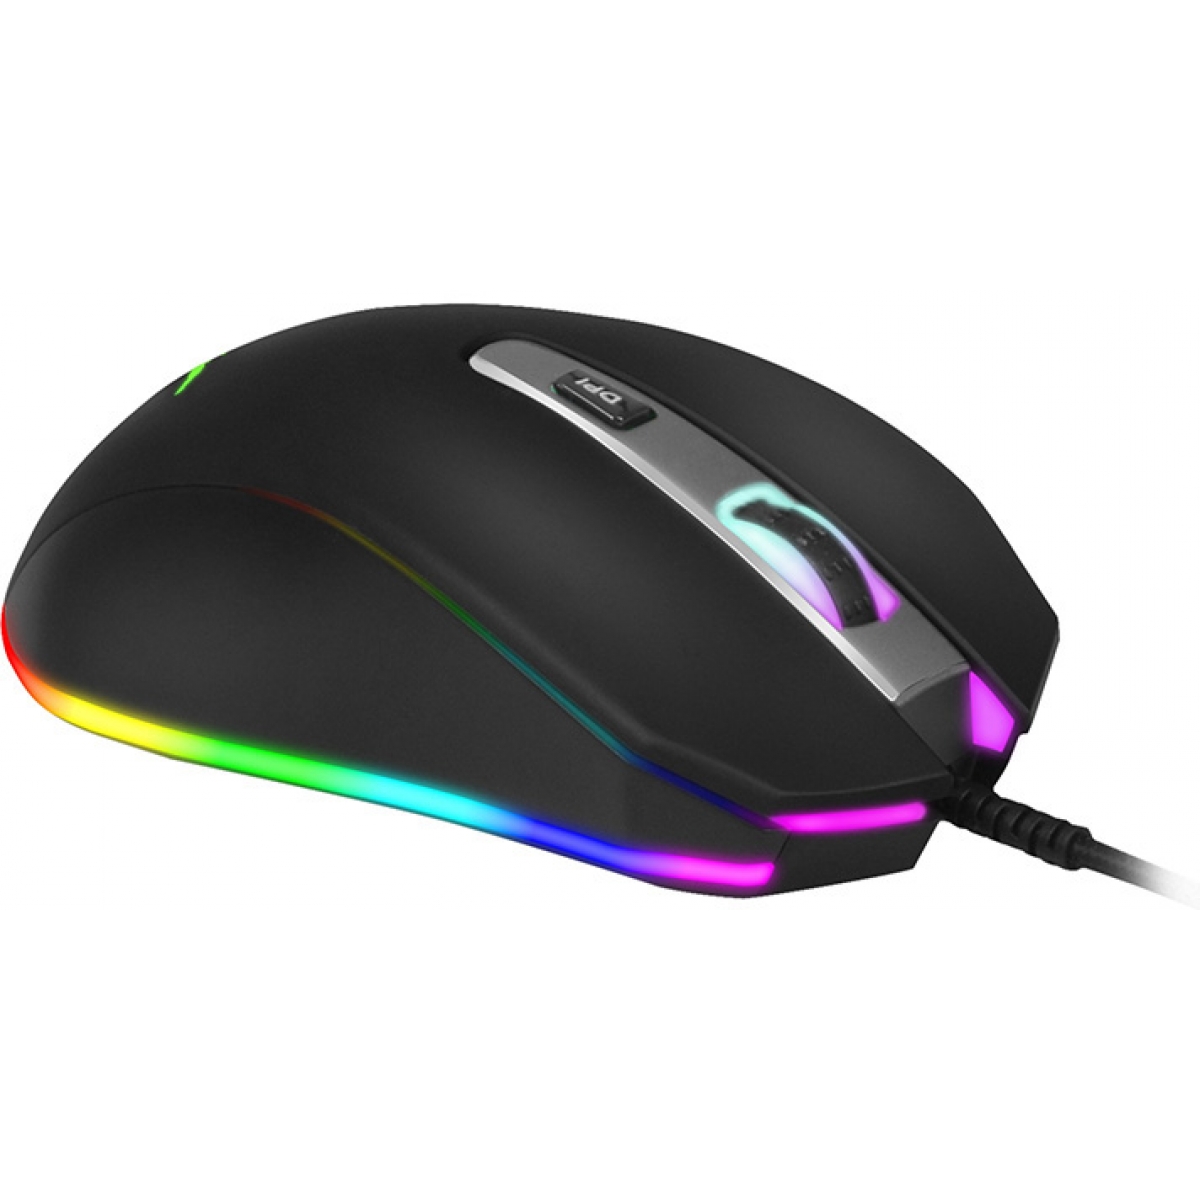 Mouse Gamer Havit MS837 RGB, 7000 DPI, 7 Botões, Black